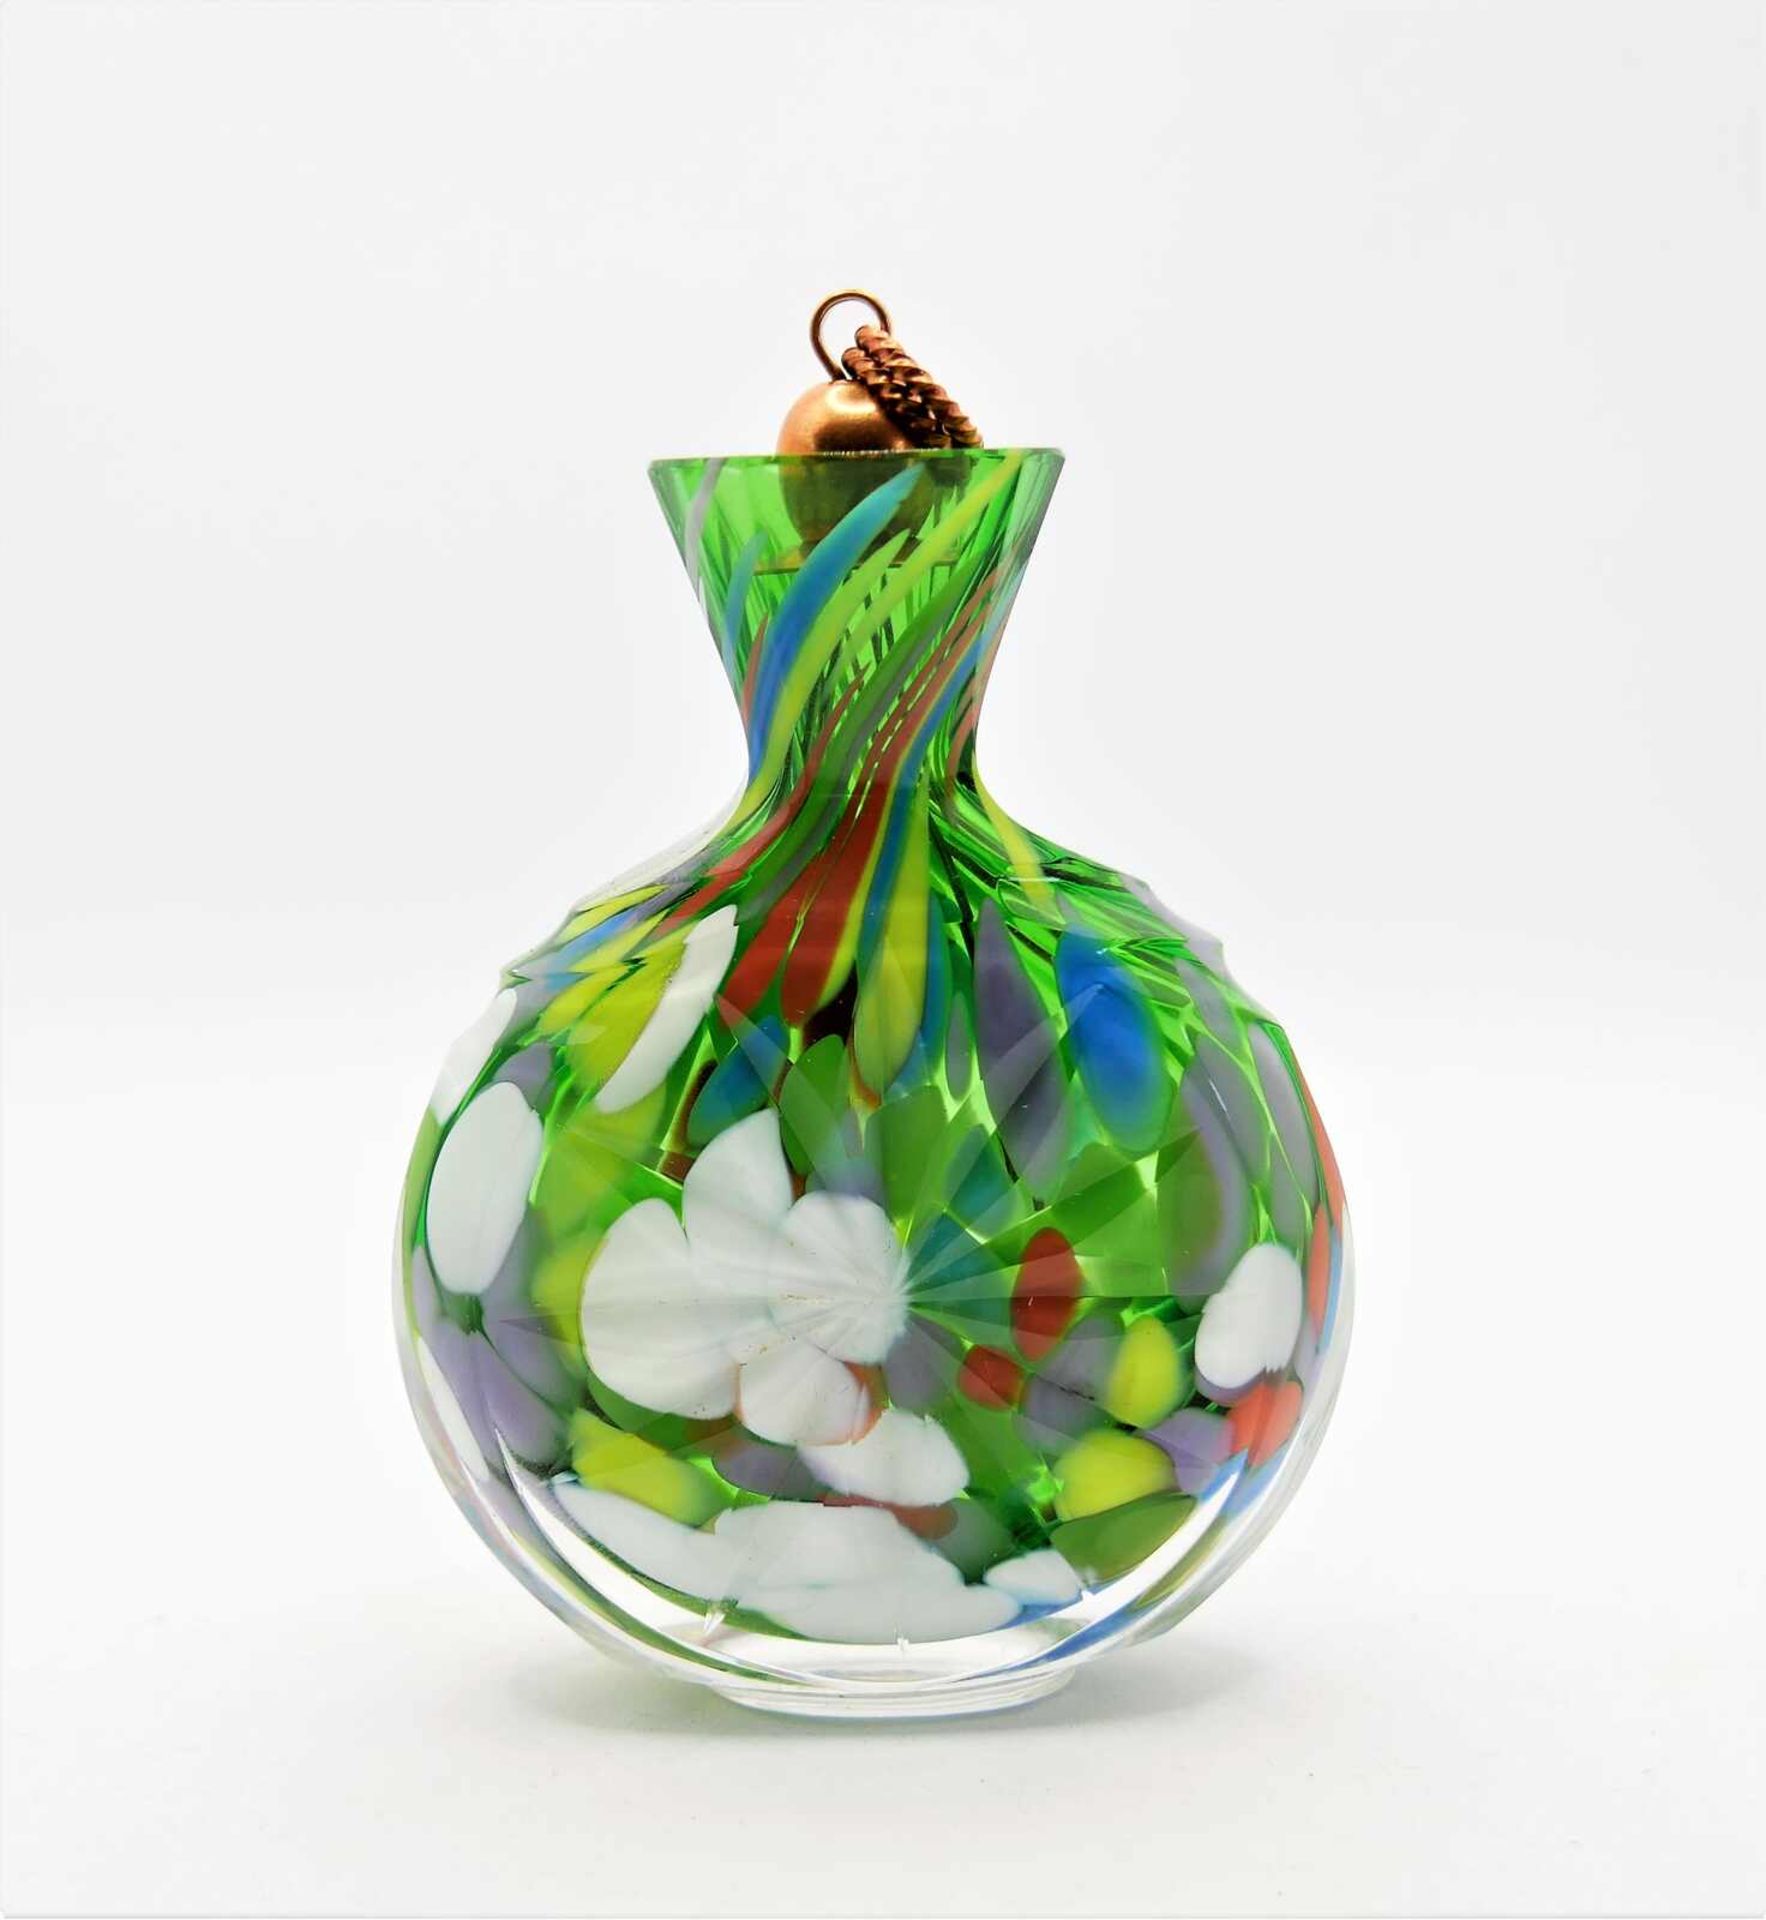 Schnupftabakflasche Glas aus Sammlung, Bixl, mit Sternschliff, grün/blau/weiß/rot/lila, mit Stöp - Image 2 of 2